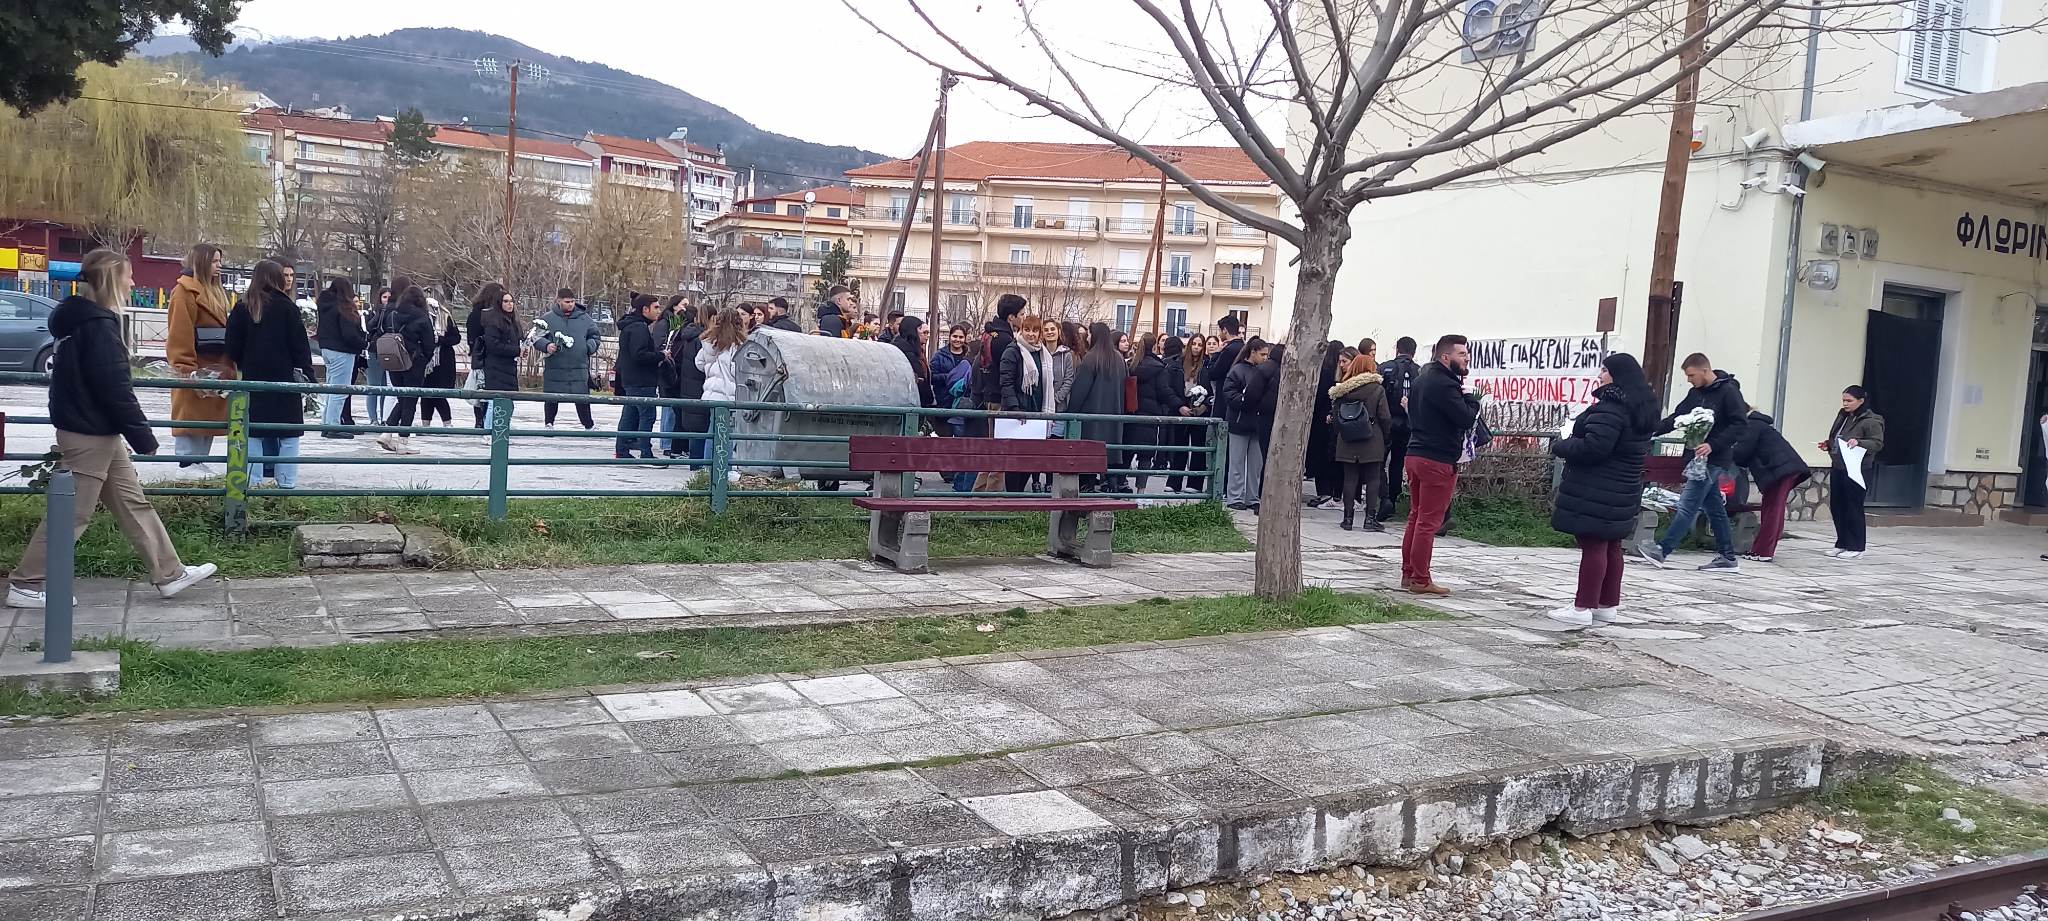 Διαμαρτυρία φοιτητών στο σταθμό της Φλώρινας